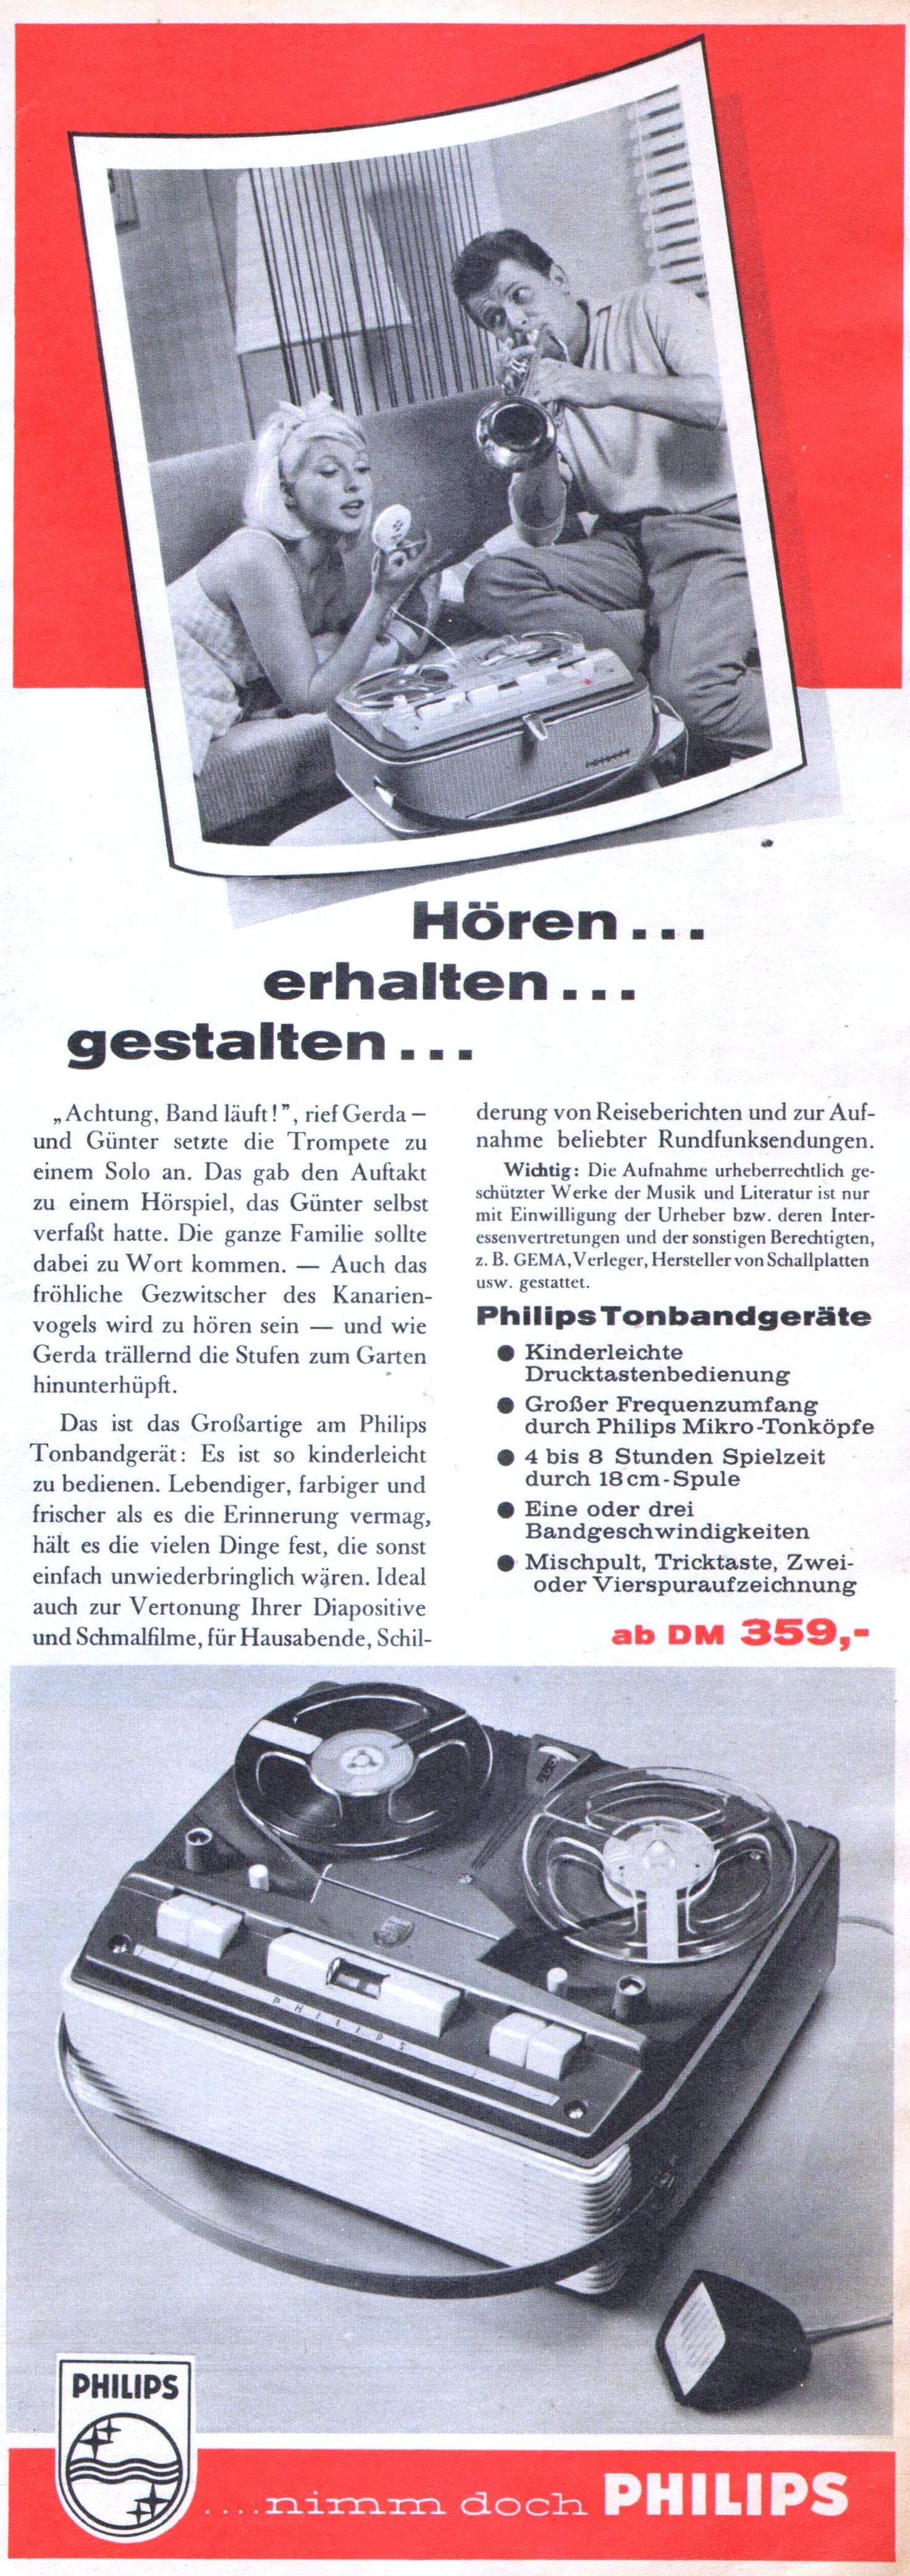 Philips 1959 166.jpg